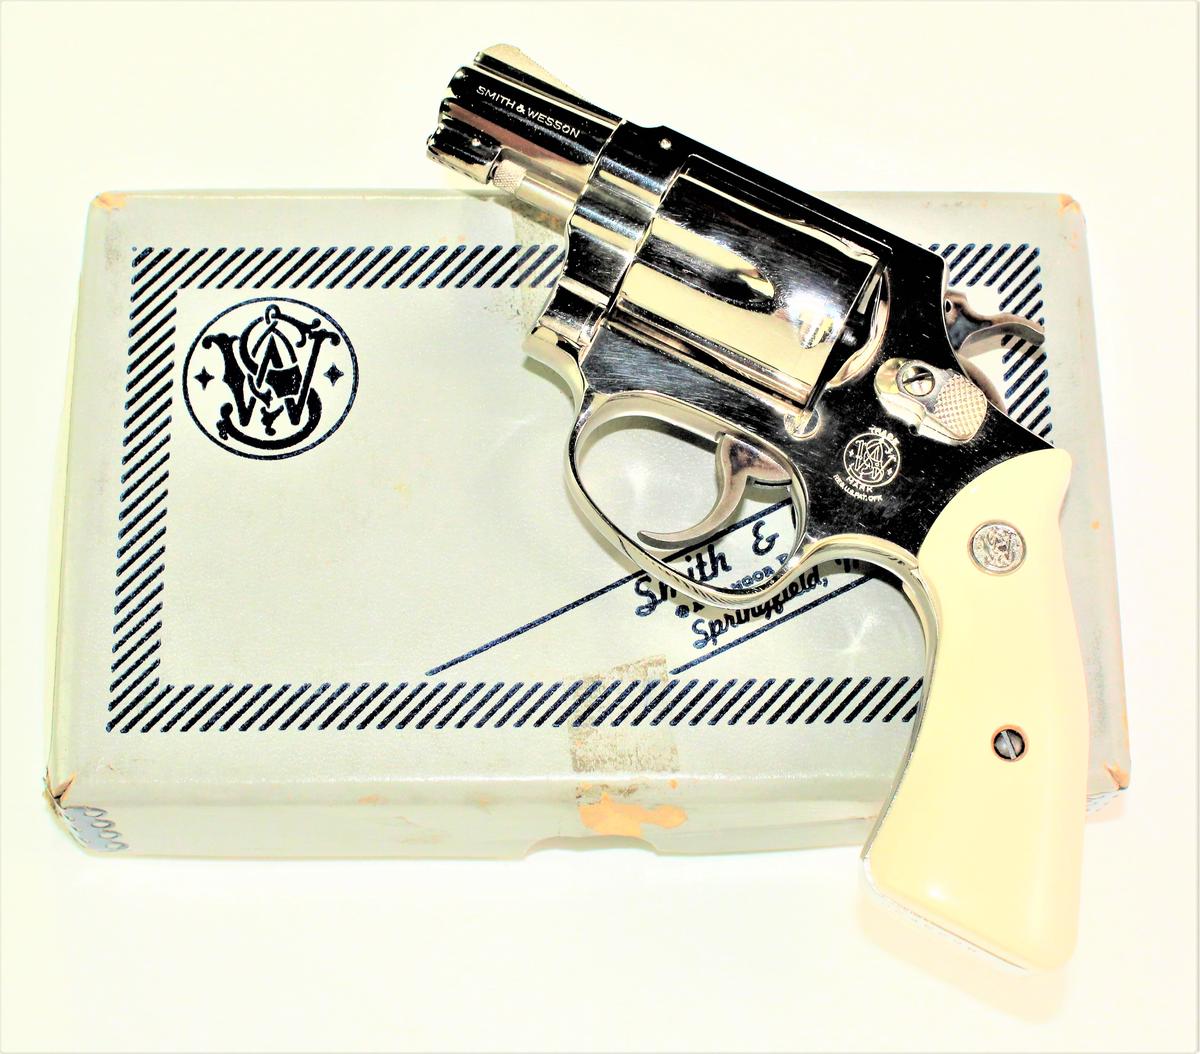 Smith & Wesson - Model 36 - .38 S&W Spl.